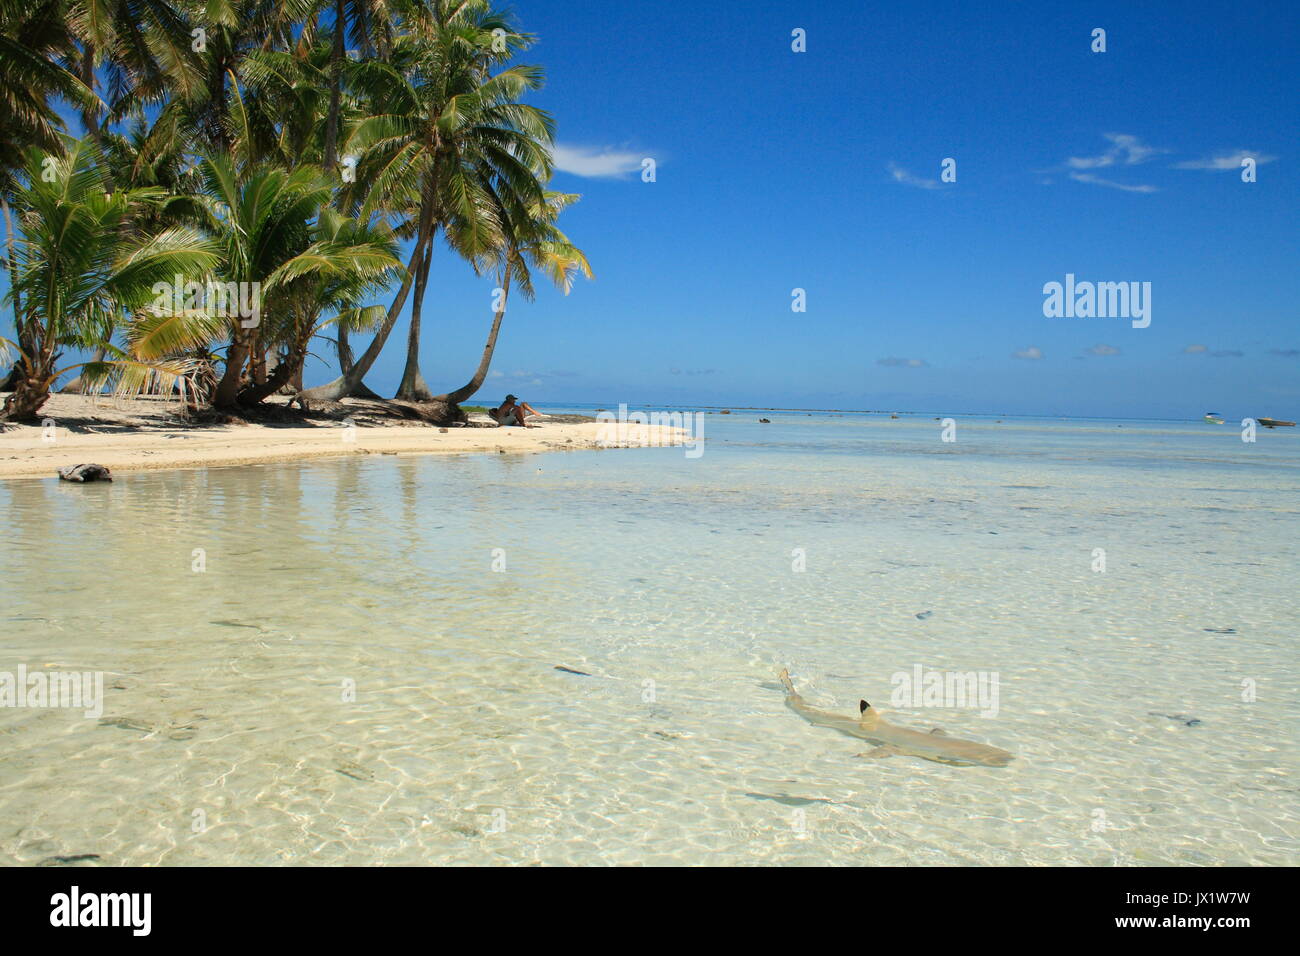 Requin à pointes noires nageant devant onu îlot de l'atollo de Rangiroa - - - - Foto Stock